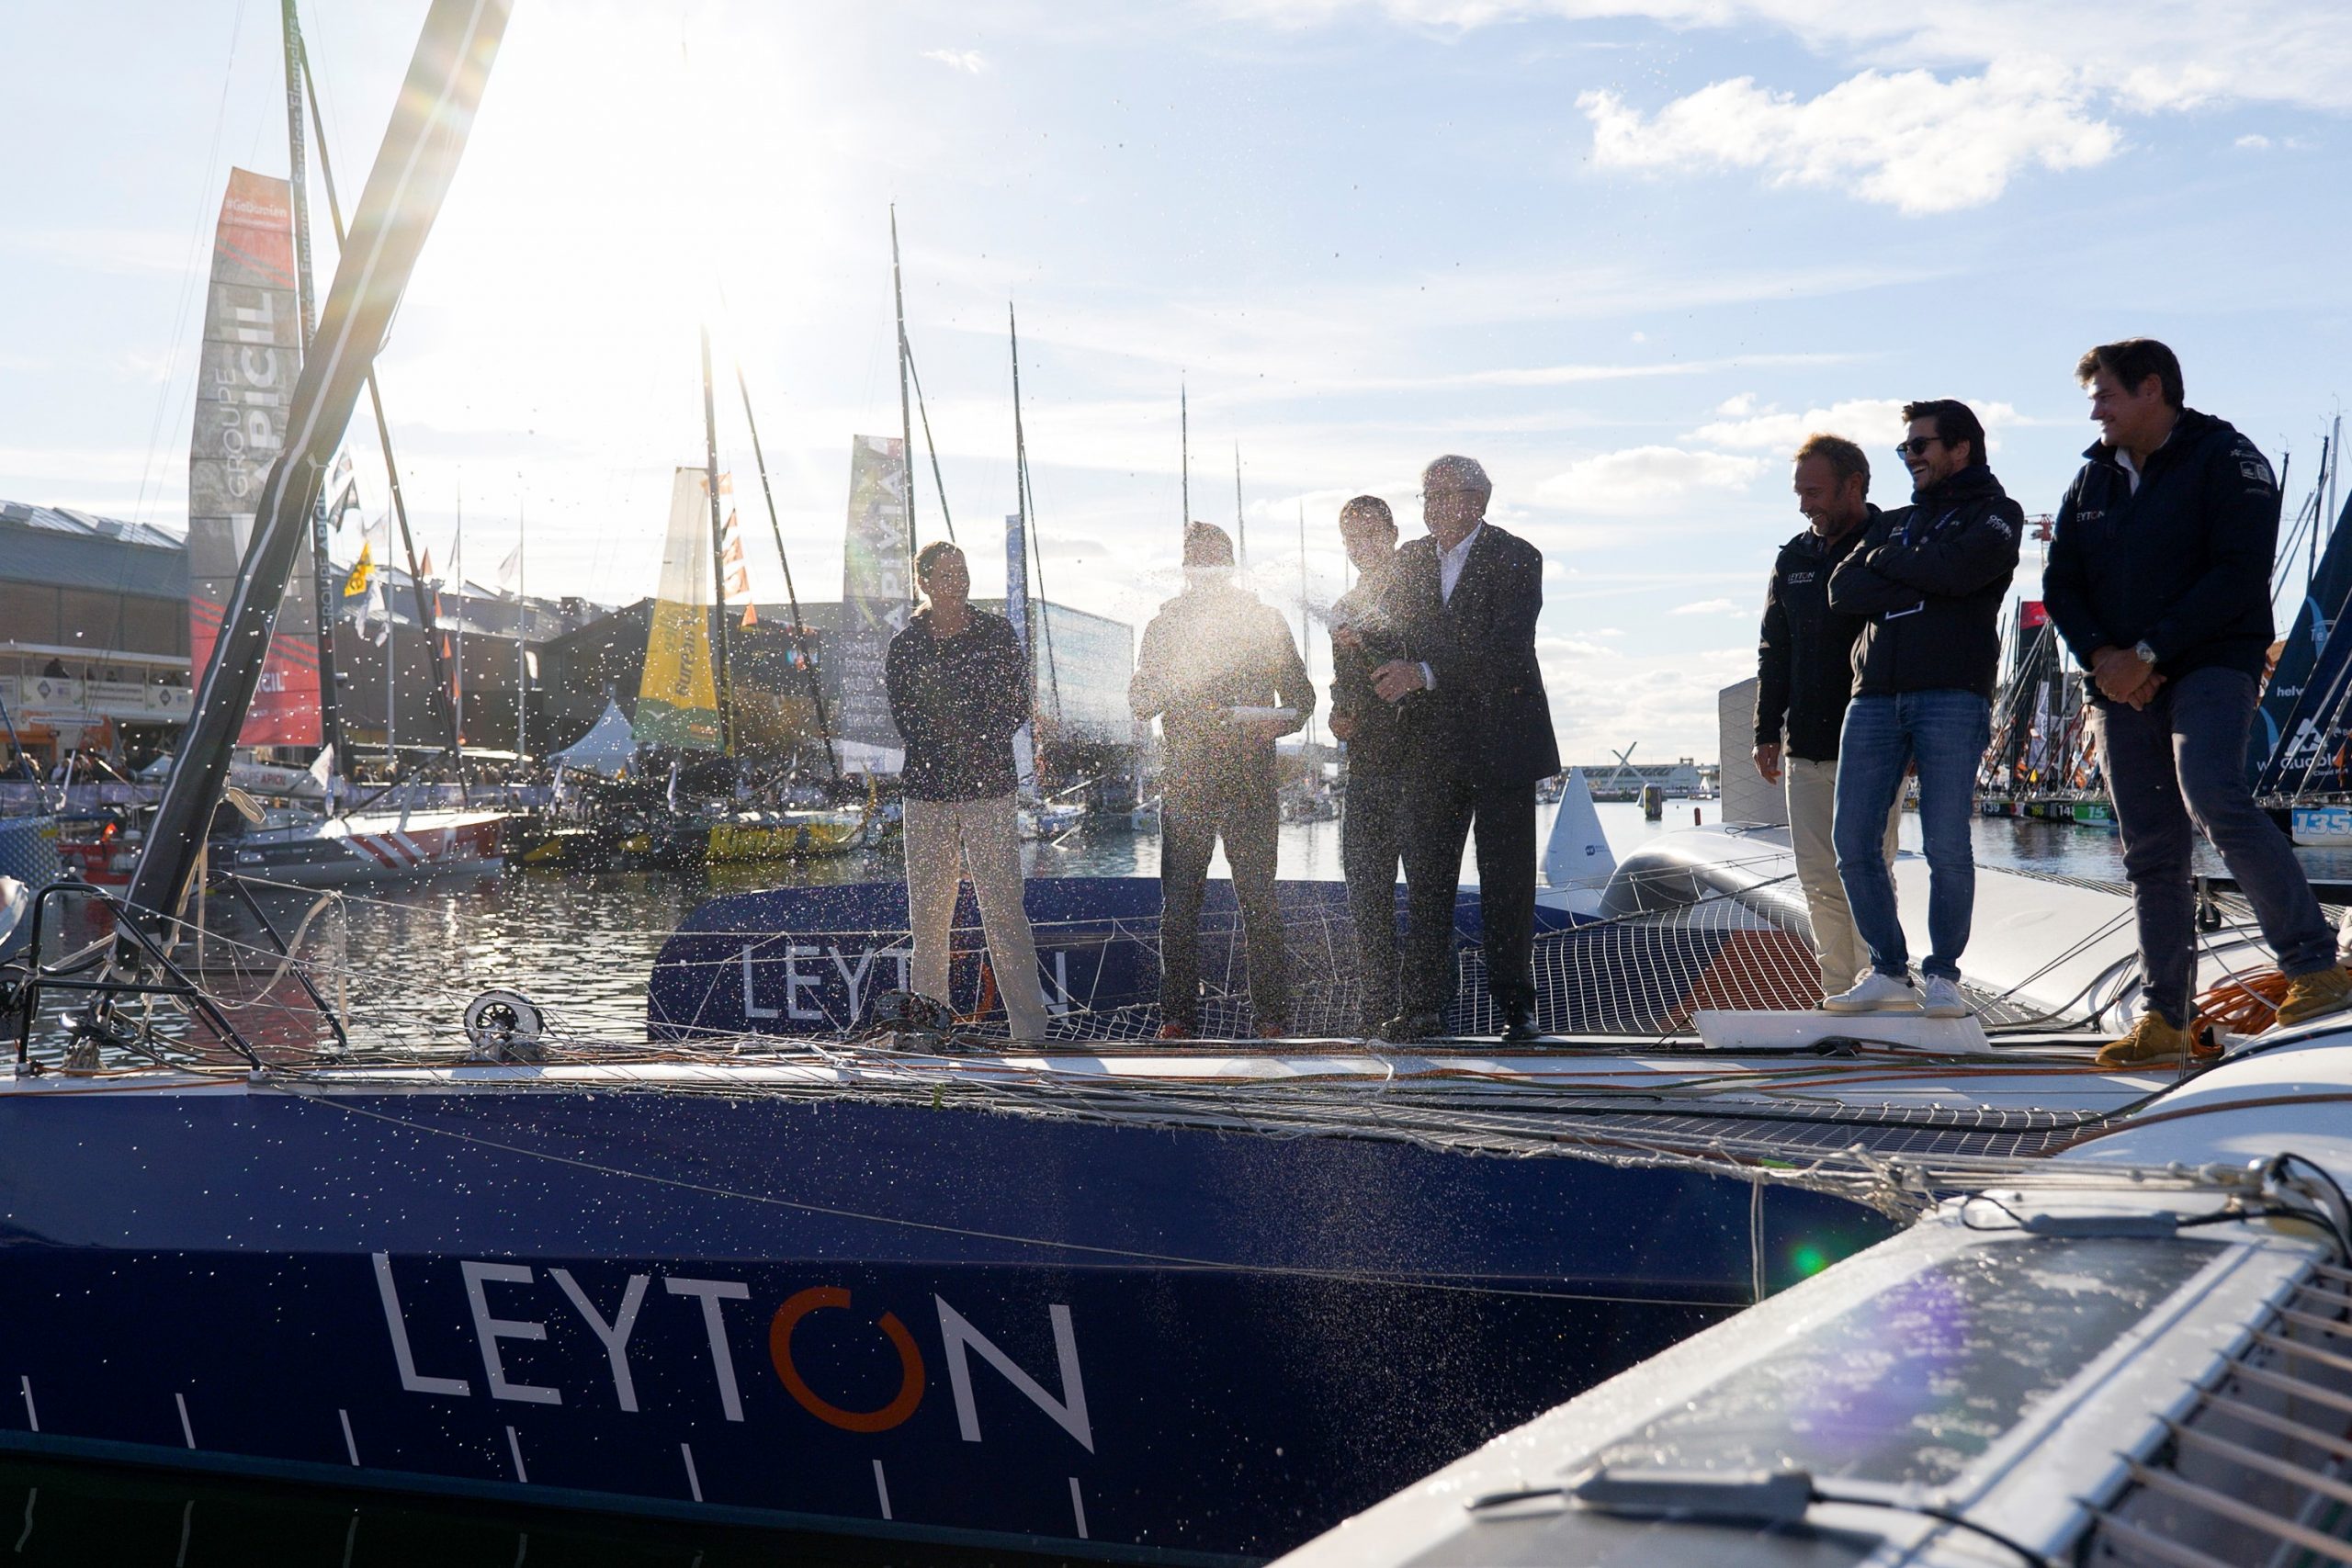 Baptême de l’Ocean Fifty de Leyton avant son départ pour la Transat Jacques Vabre